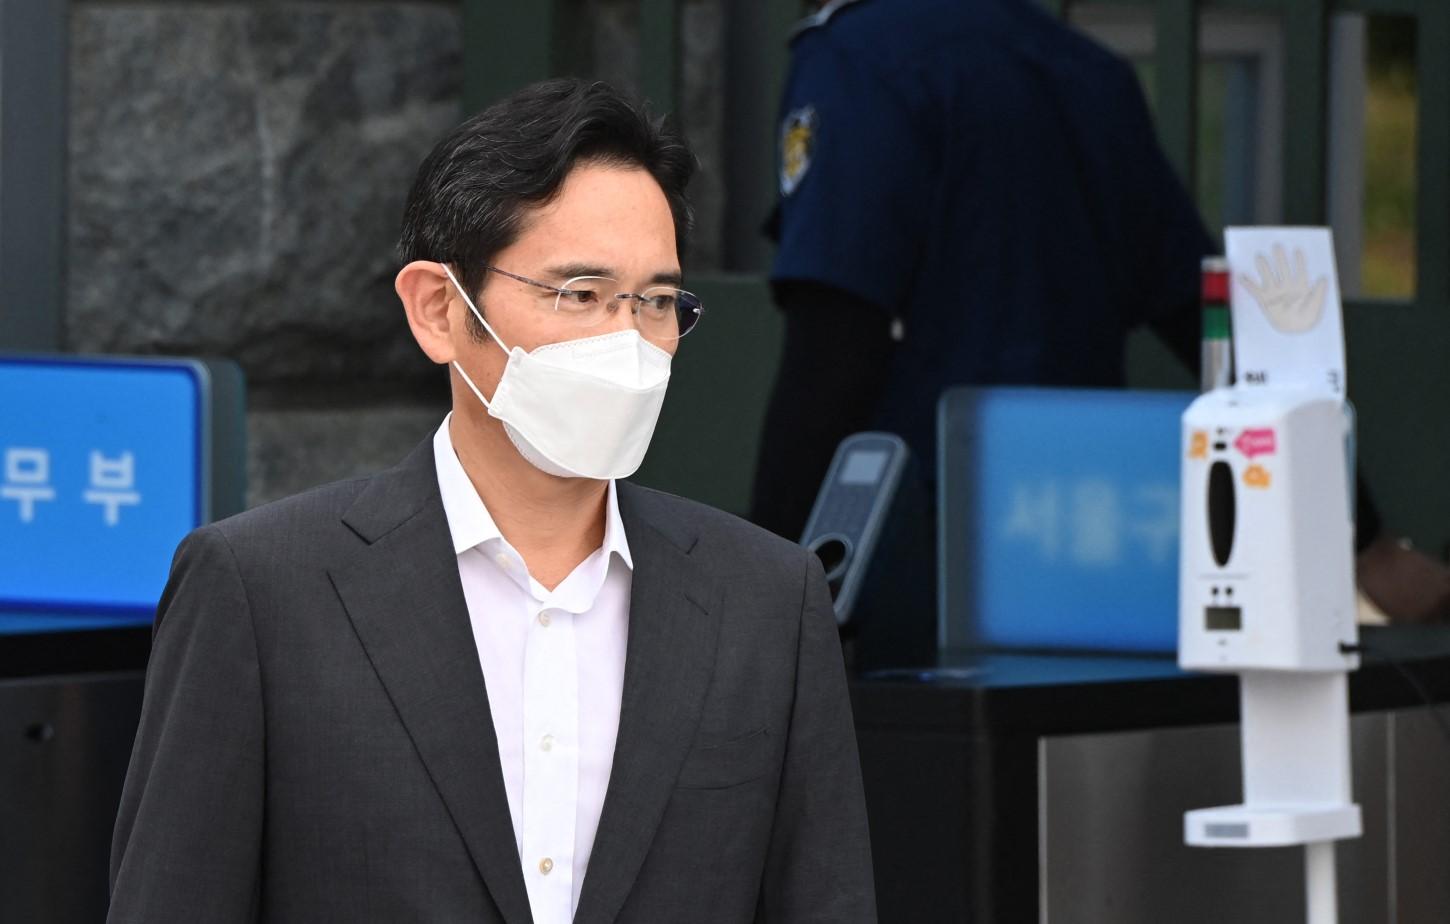 Vođa Samsunga pušten iz zatvora prije isteka kazne za korupciju